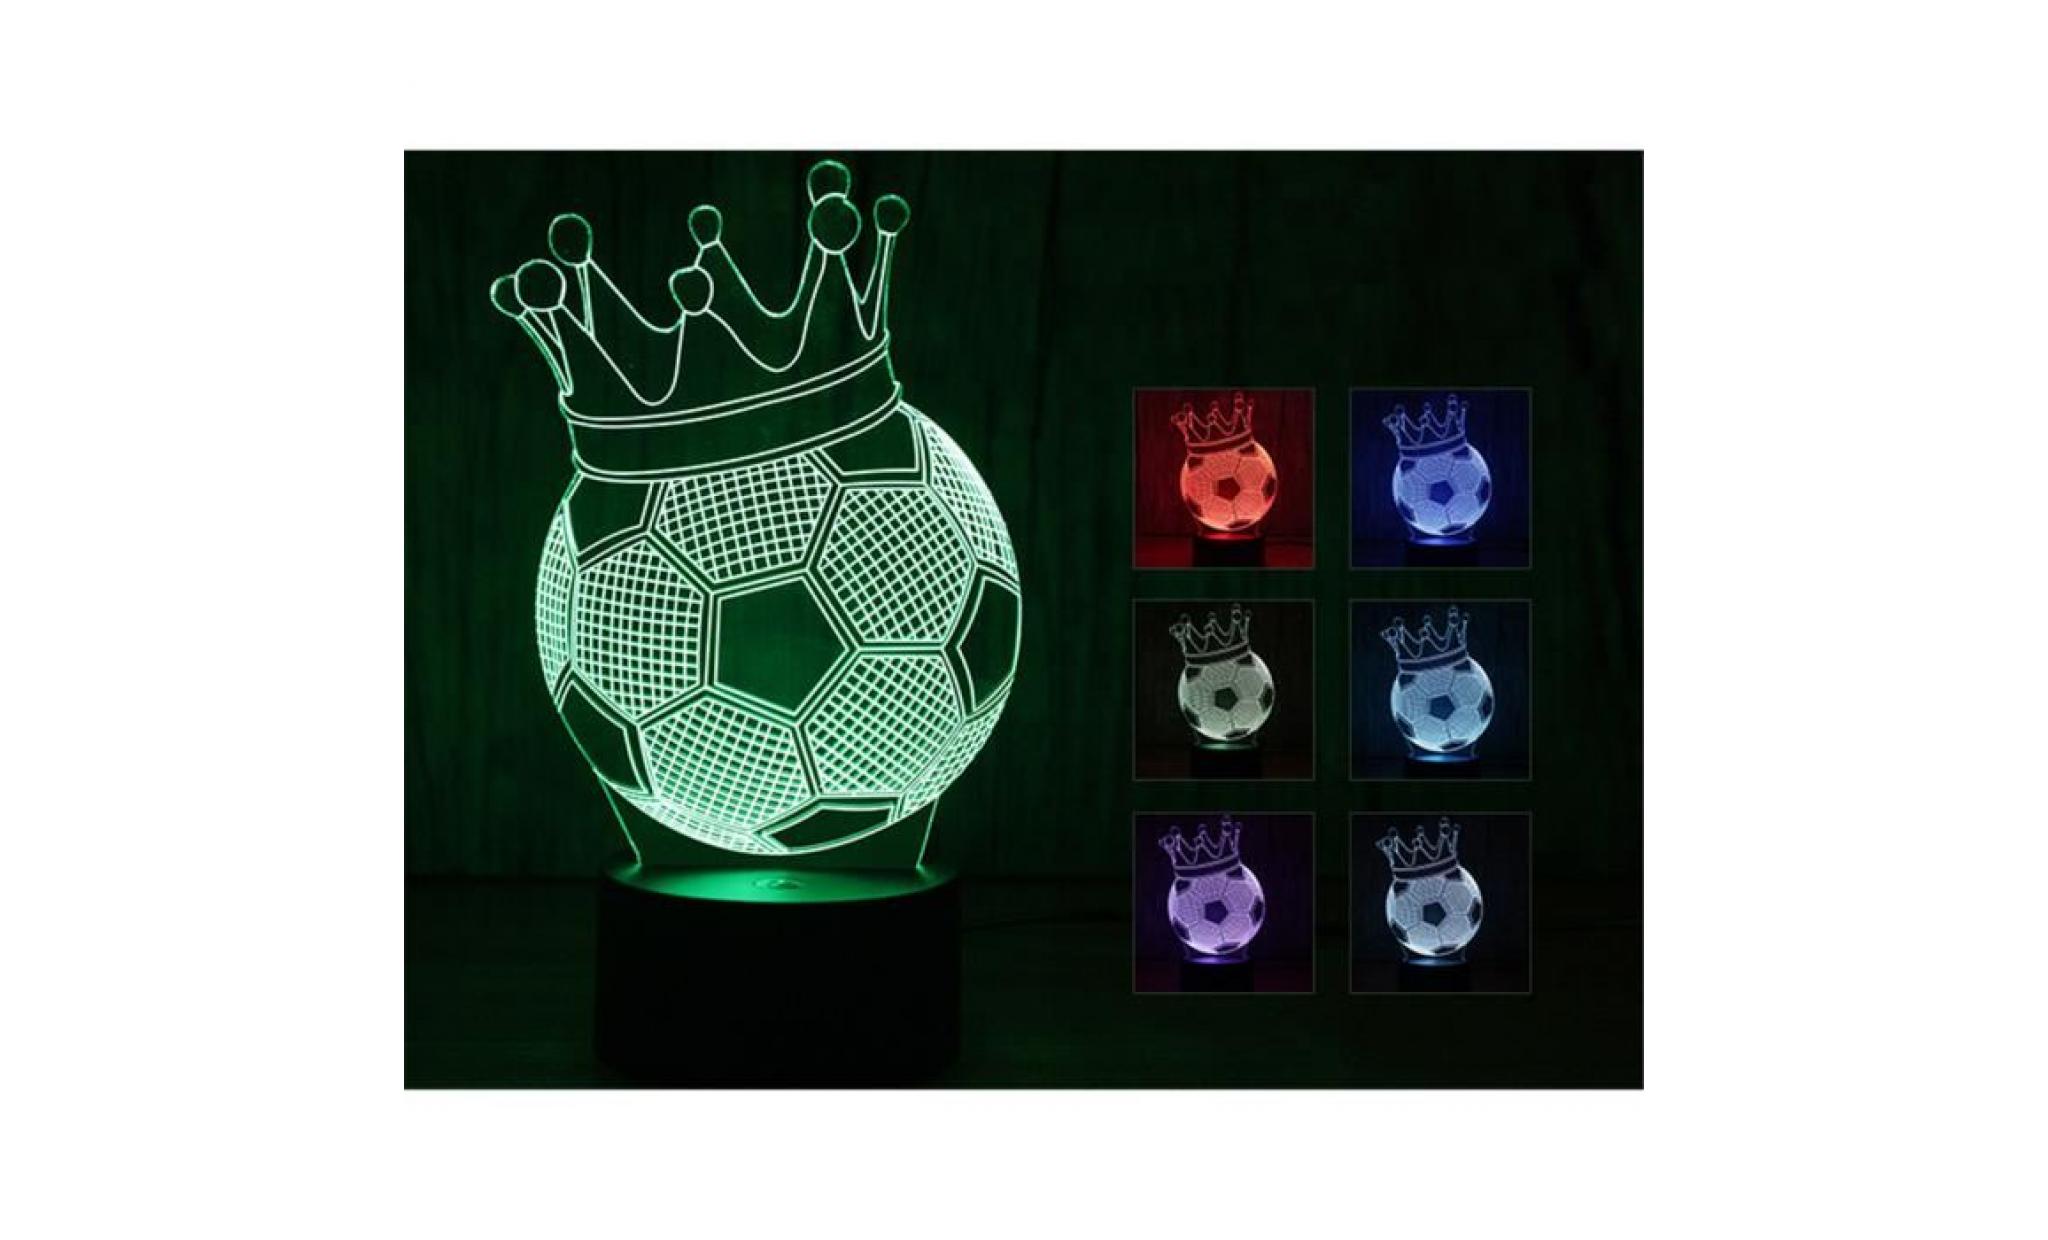 football 3d led night light lampes illusion optique 3d 7 couleurs pour la maison yt2037 pas cher